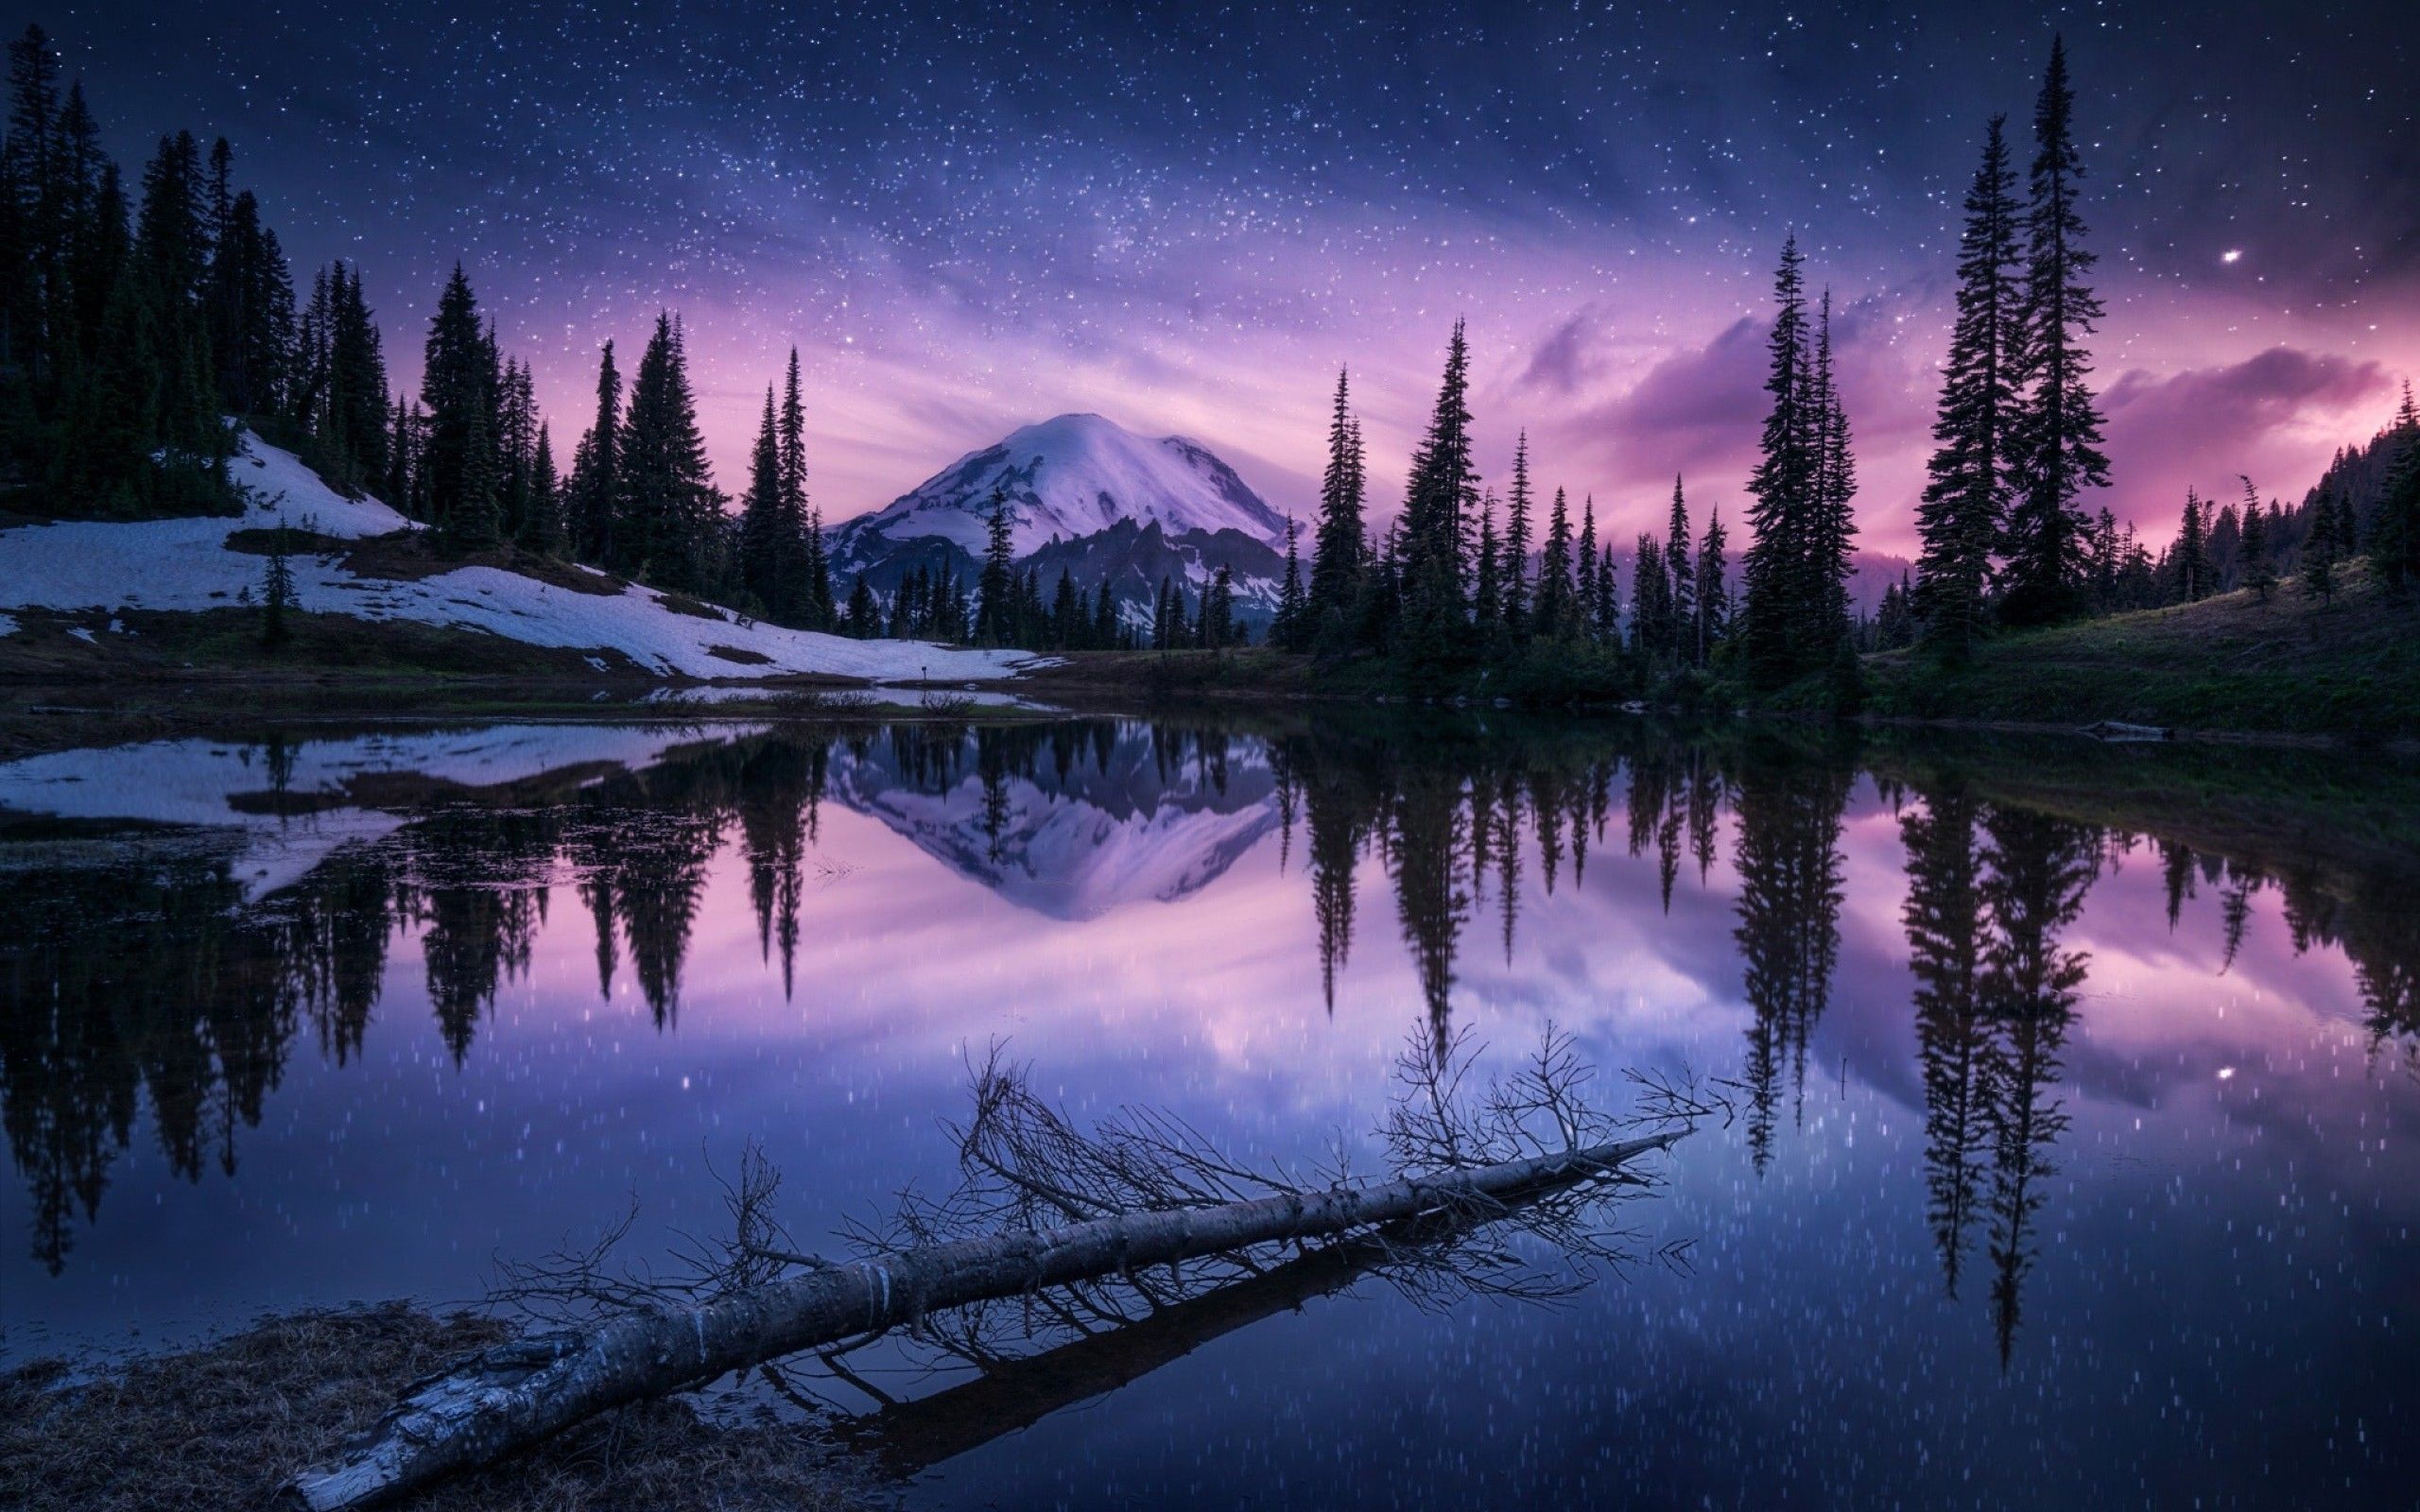 Lake Nature Night Reflection 2560x1600 Resolution HD 4k